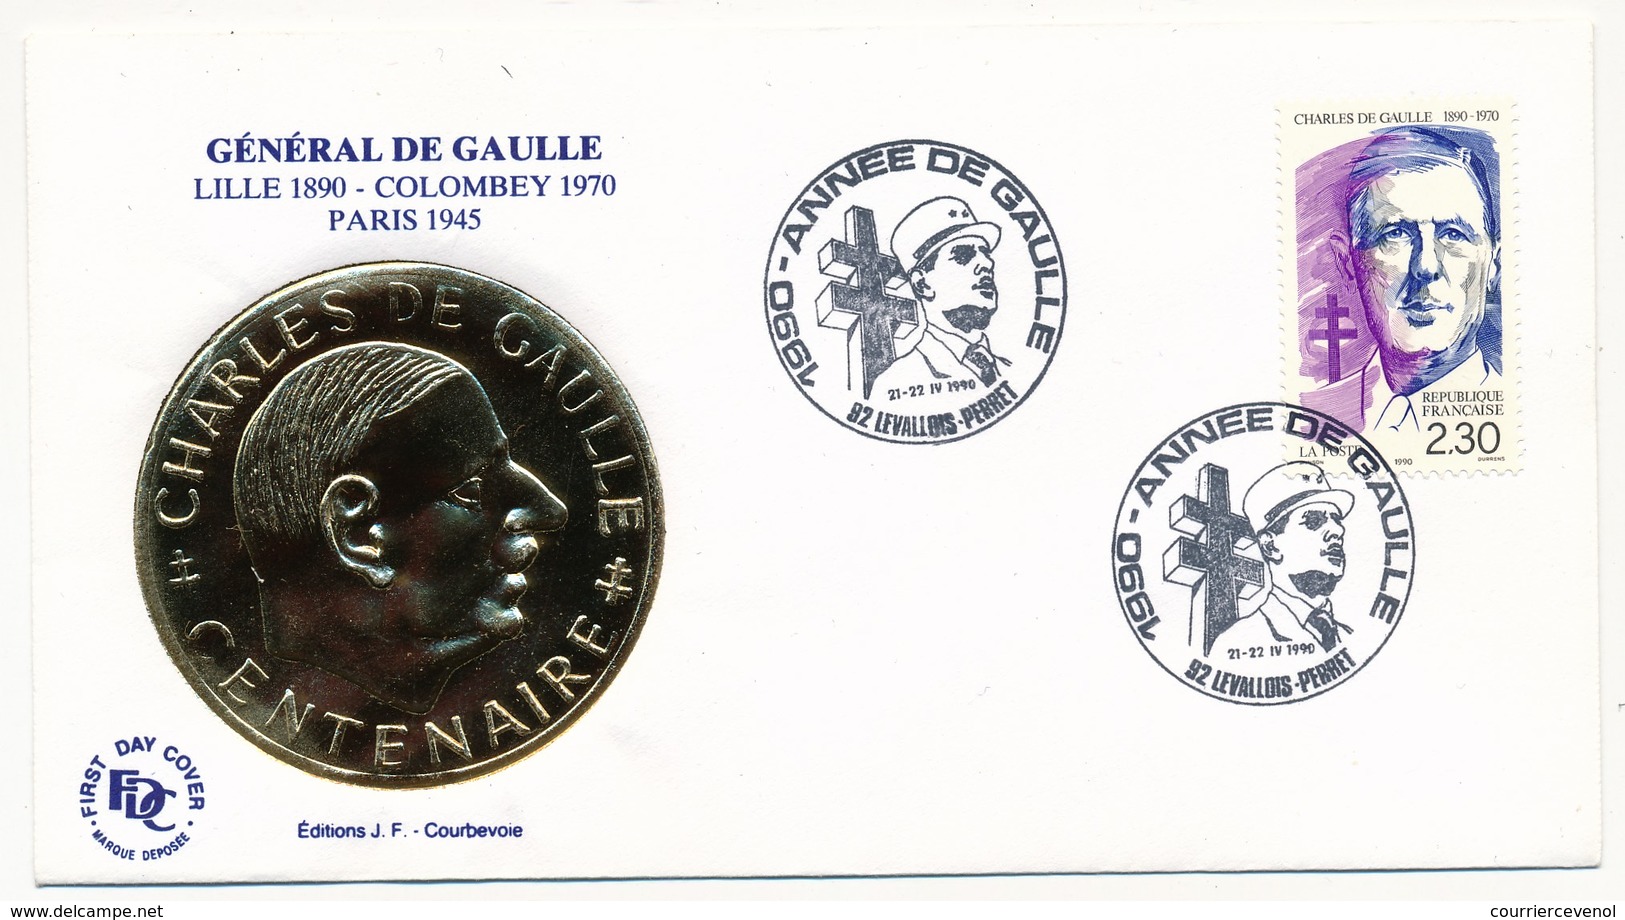 FRANCE - Enveloppe - Cachet Temporaire "1990 Année De Gaulle" - Levallois Perret  - 21/22.4.1990 - De Gaulle (Général)